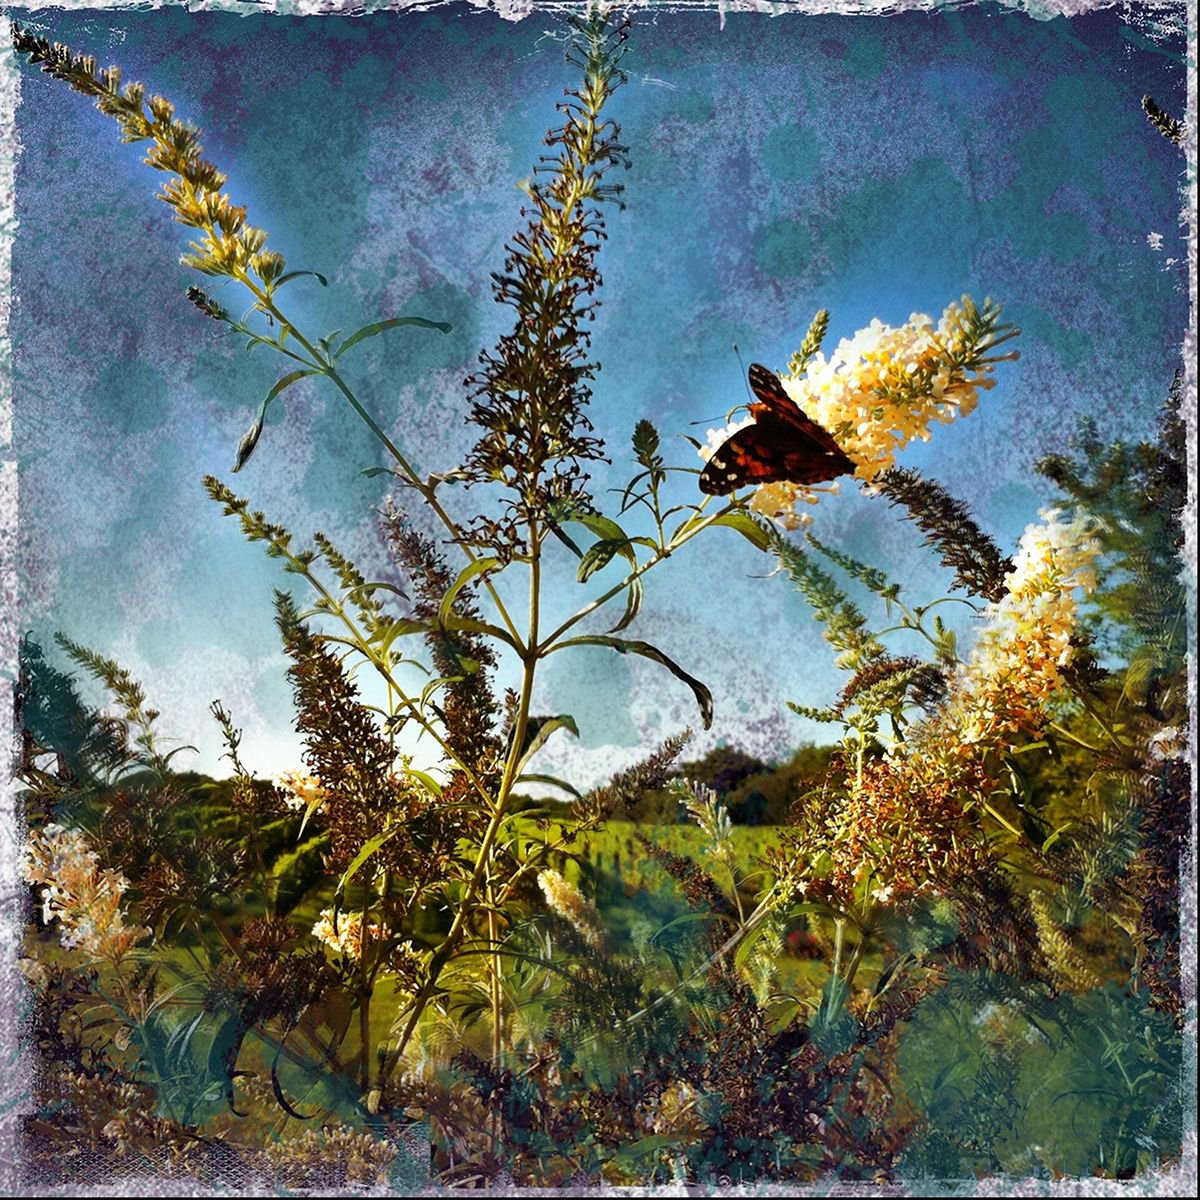 Butterfly by Greg Dyro